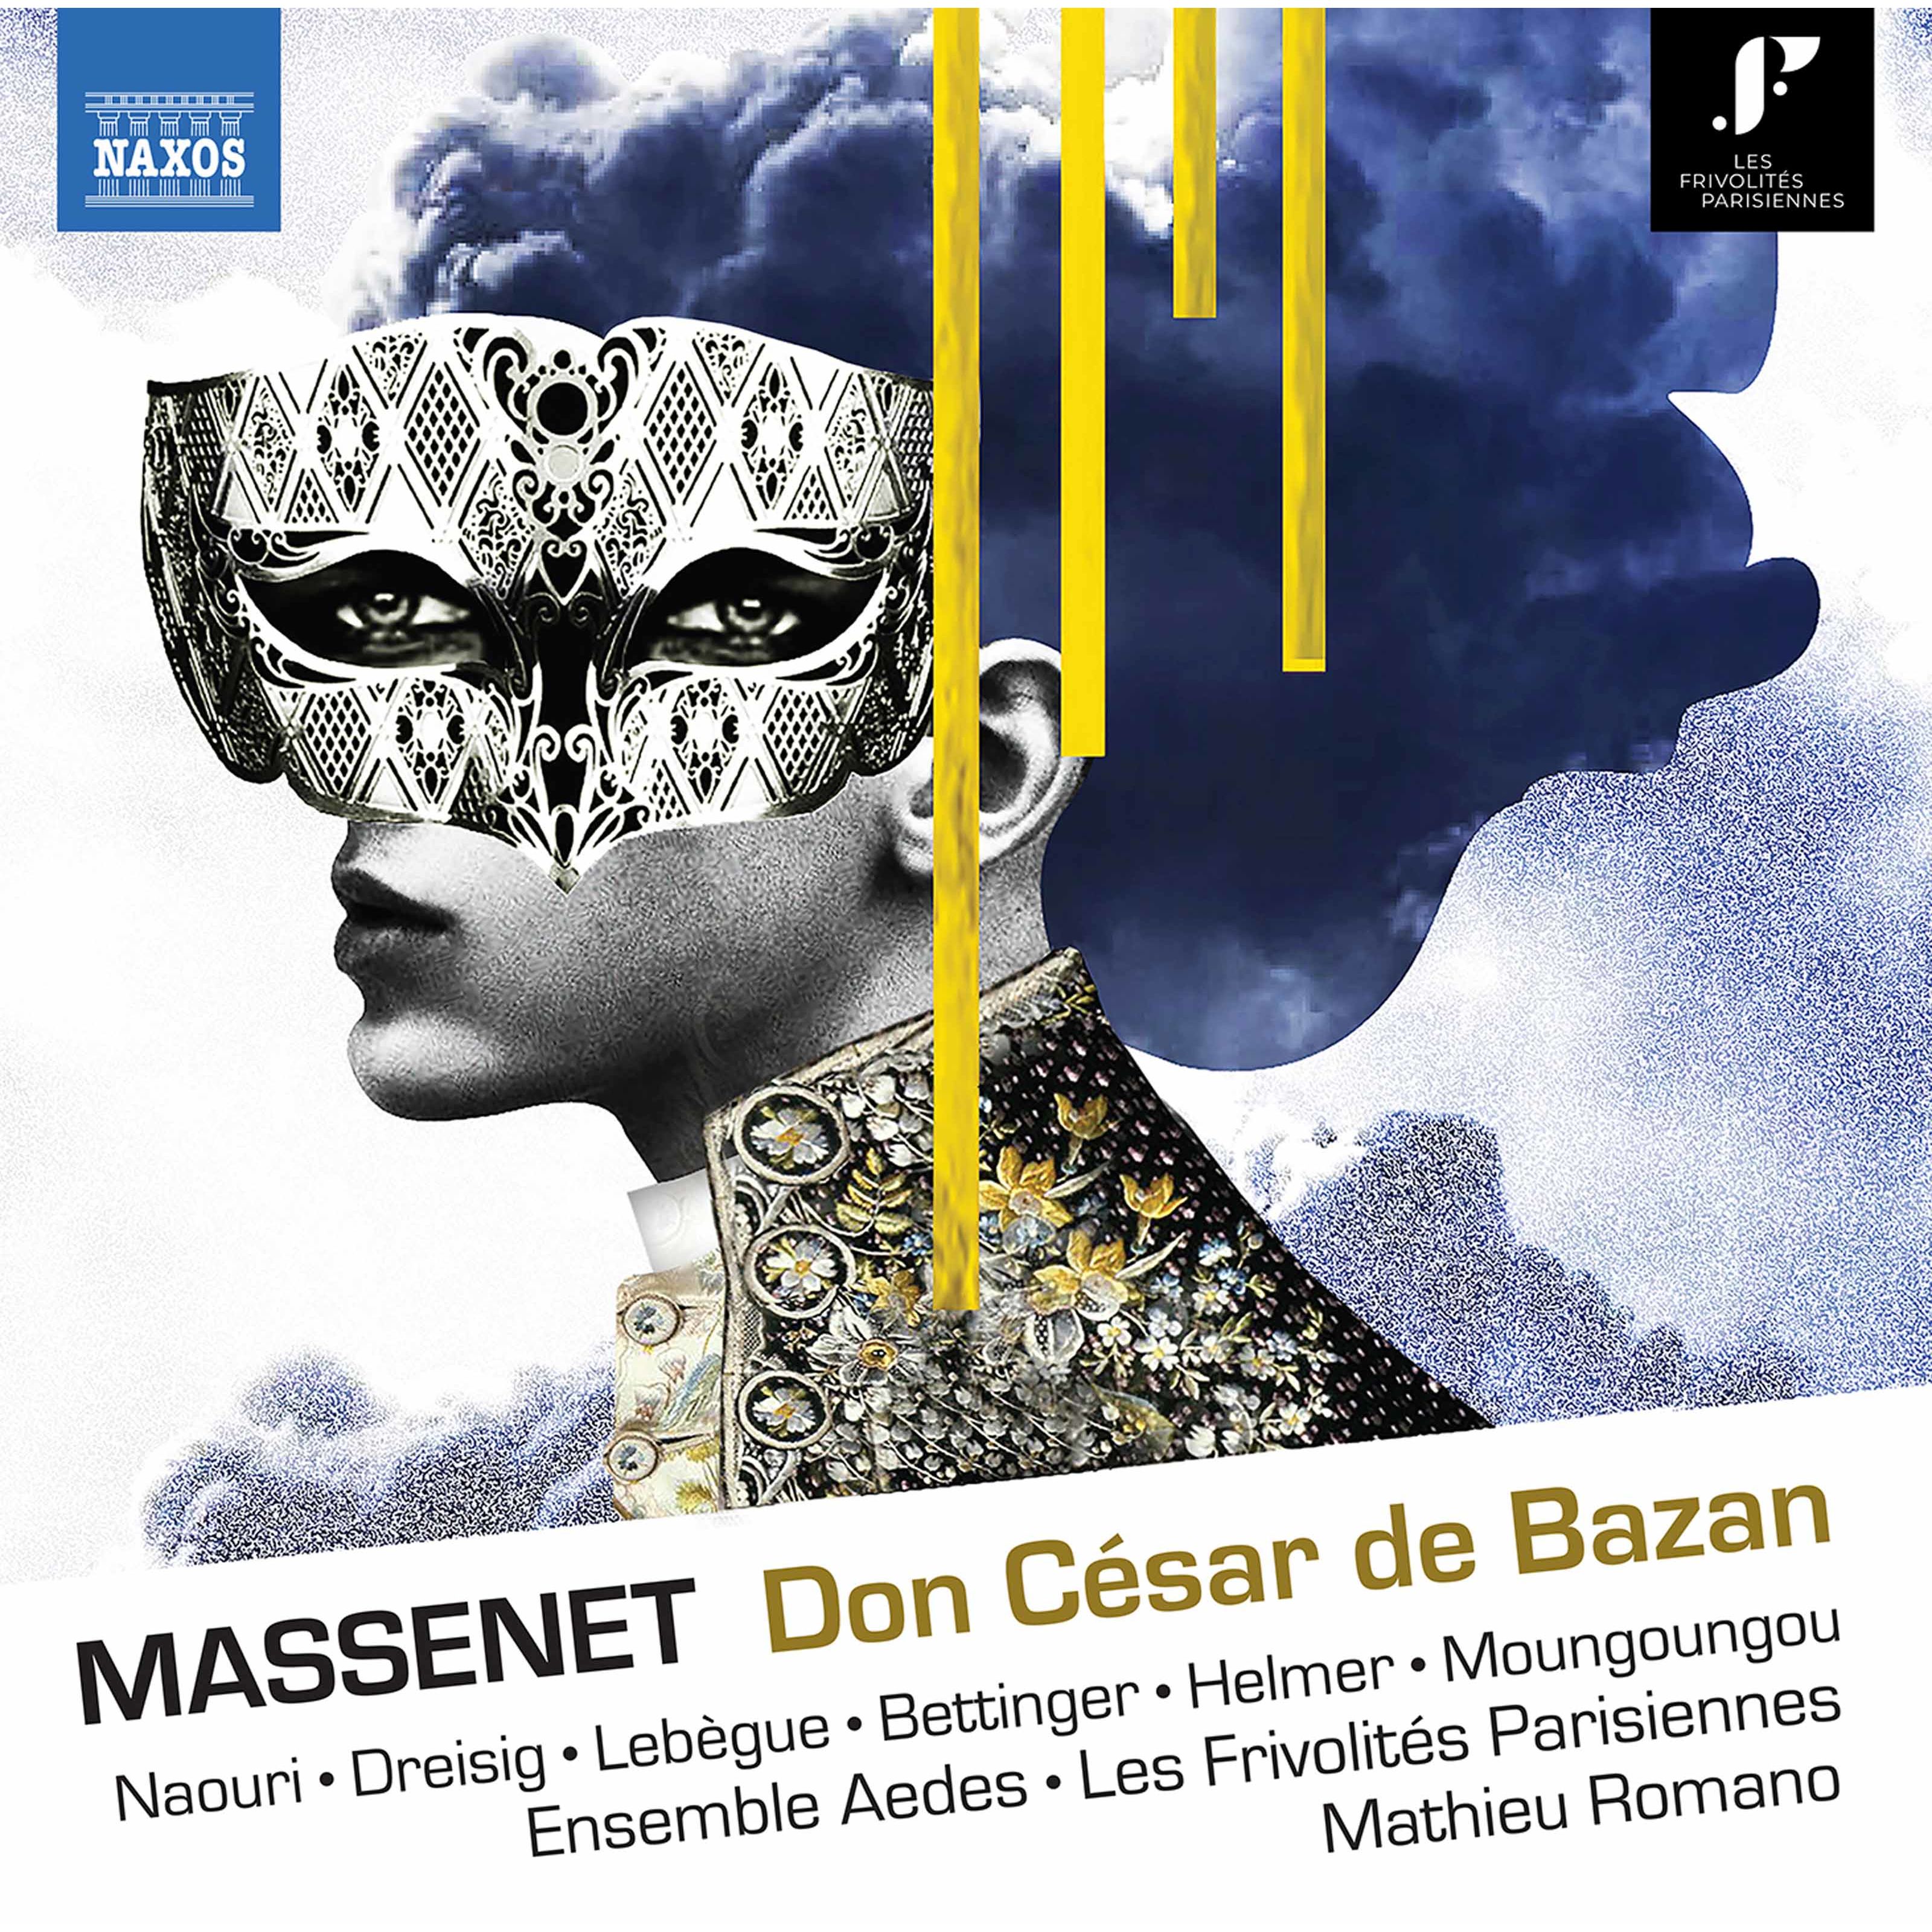 Mathieu Romano, Orchestre des Frivolitrs Parisiennes, Laurent Naouri – Massenet Don Crsar de Bazan (1888 Version) (2020) [FLAC 24bit/96kHz]